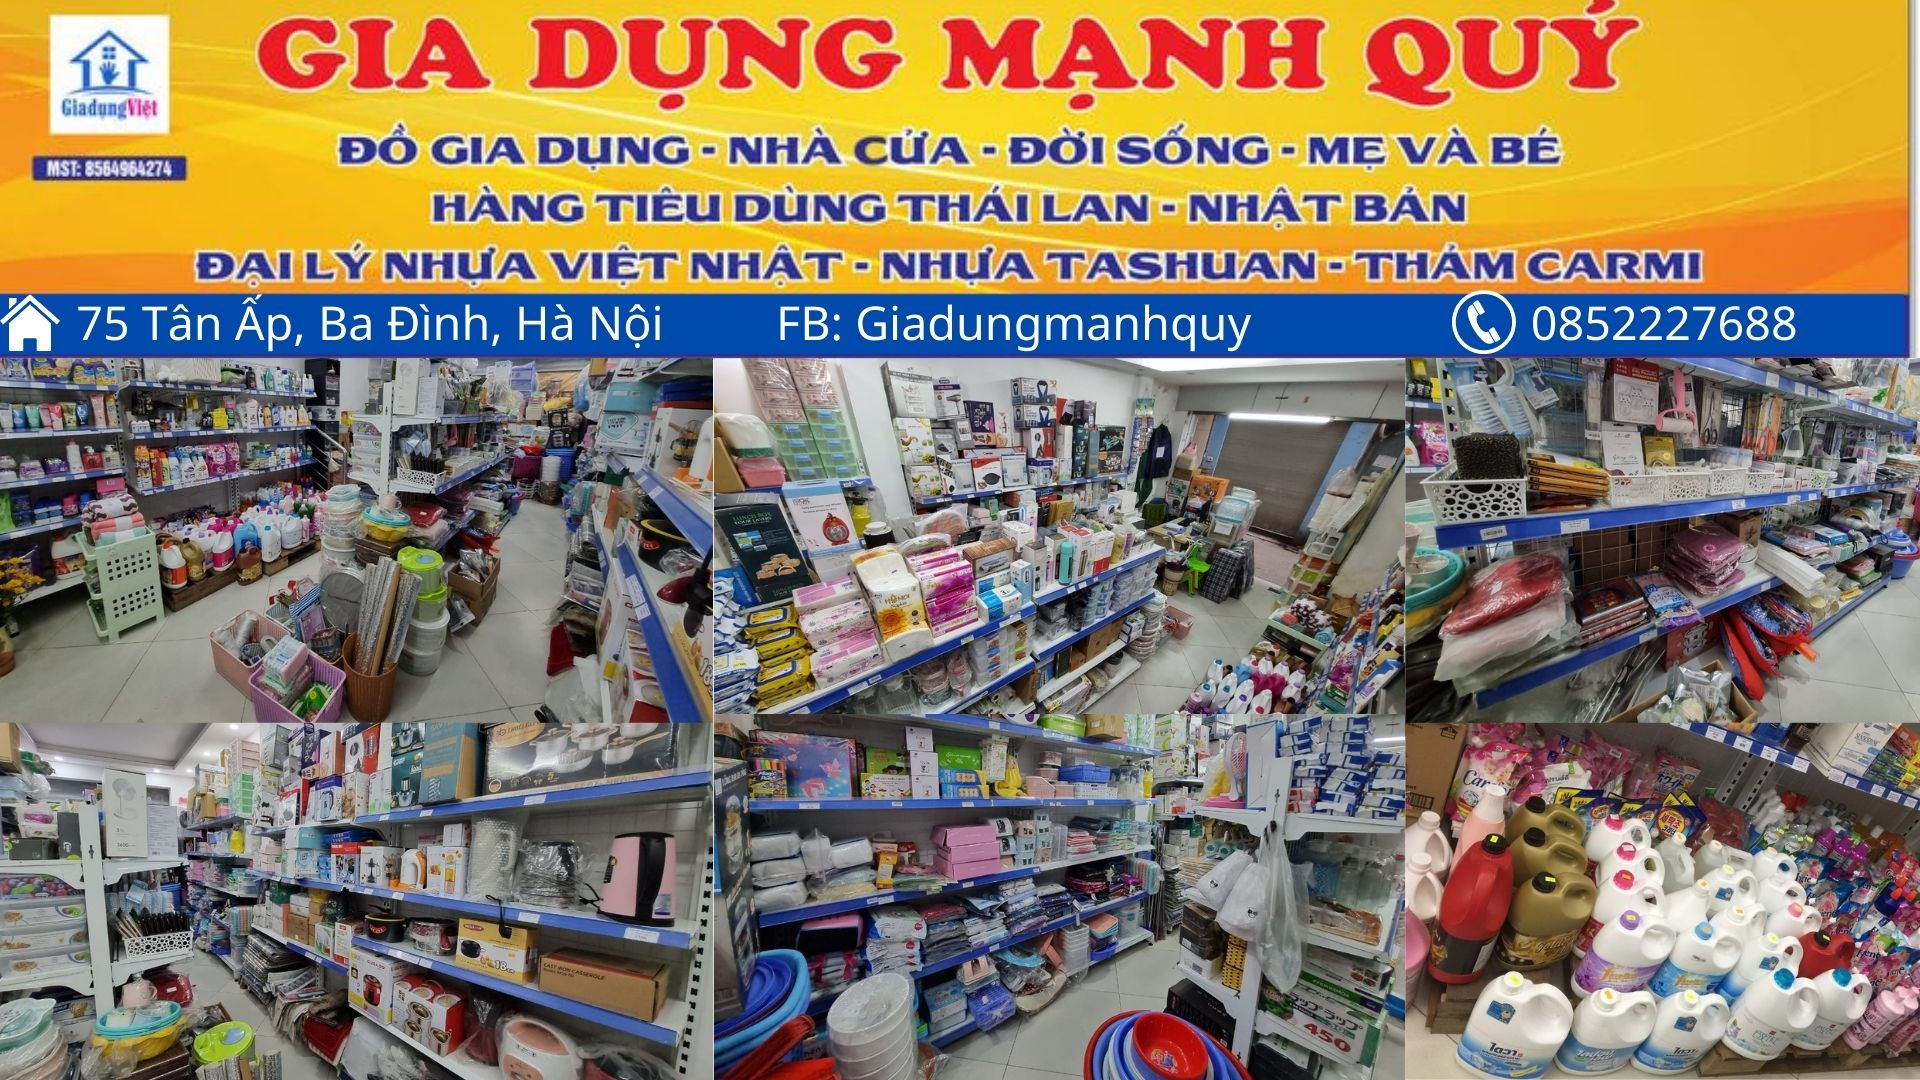 Shop Gia Dụng Việt - Shop Gia Dụng Việt tự hào là nơi tập trung các sản phẩm gia dụng độc đáo được sản xuất tại Việt Nam. Đến với chúng tôi, quý khách hàng sẽ được trải nghiệm nguồn hàng chất lượng, đa dạng và cập nhật liên tục.